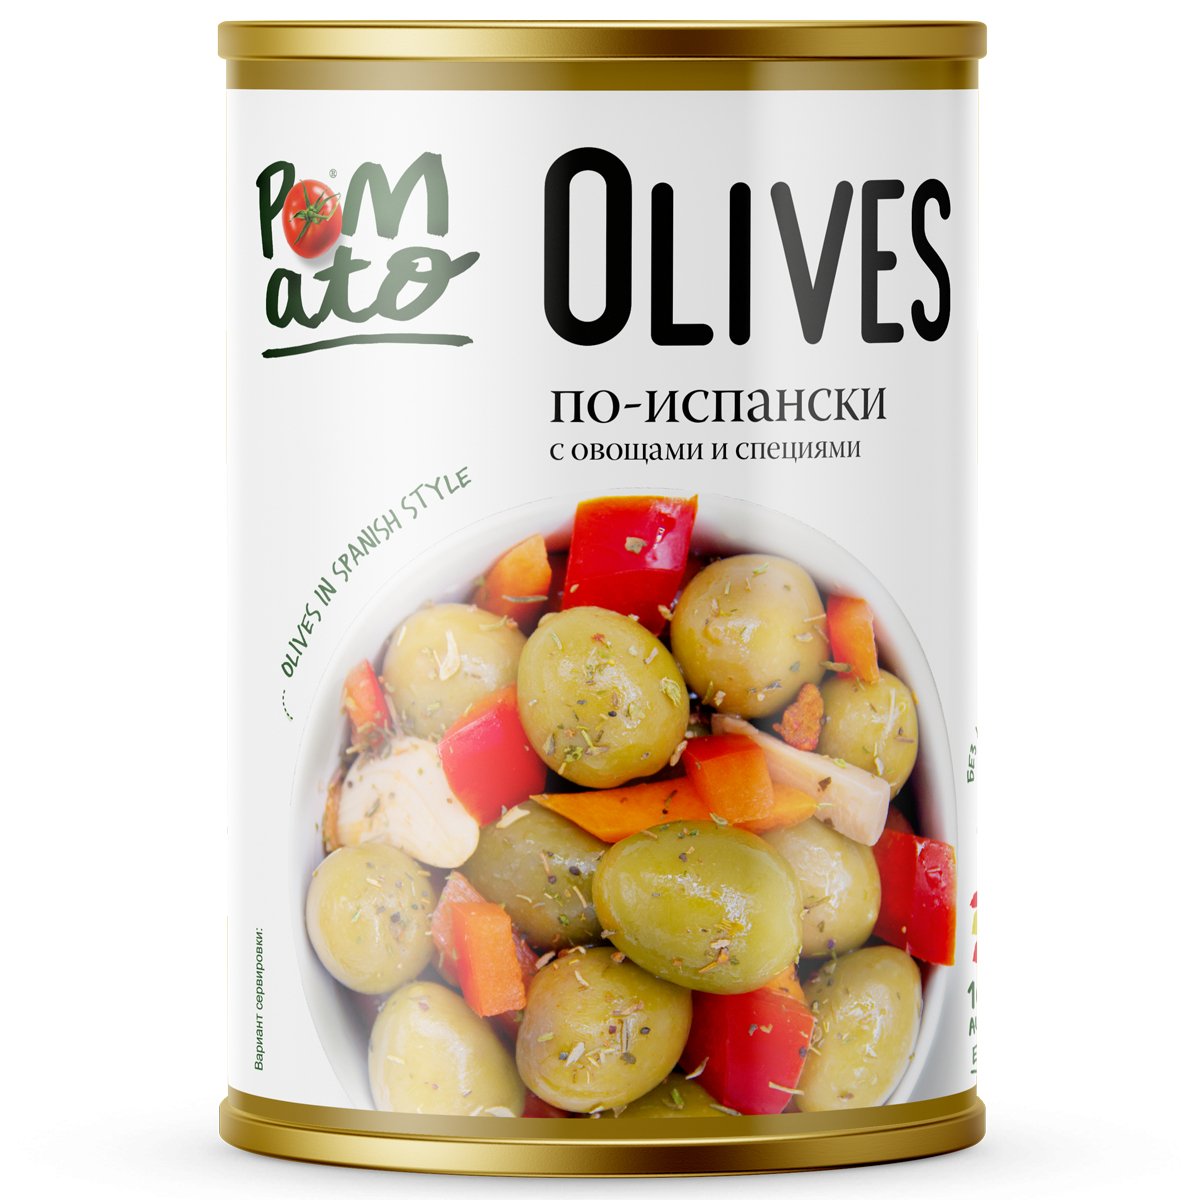 оливки зеленые amado со специями по средиземноморски 350 г Оливки Pomato по-испански с овощами и специями, 300 г